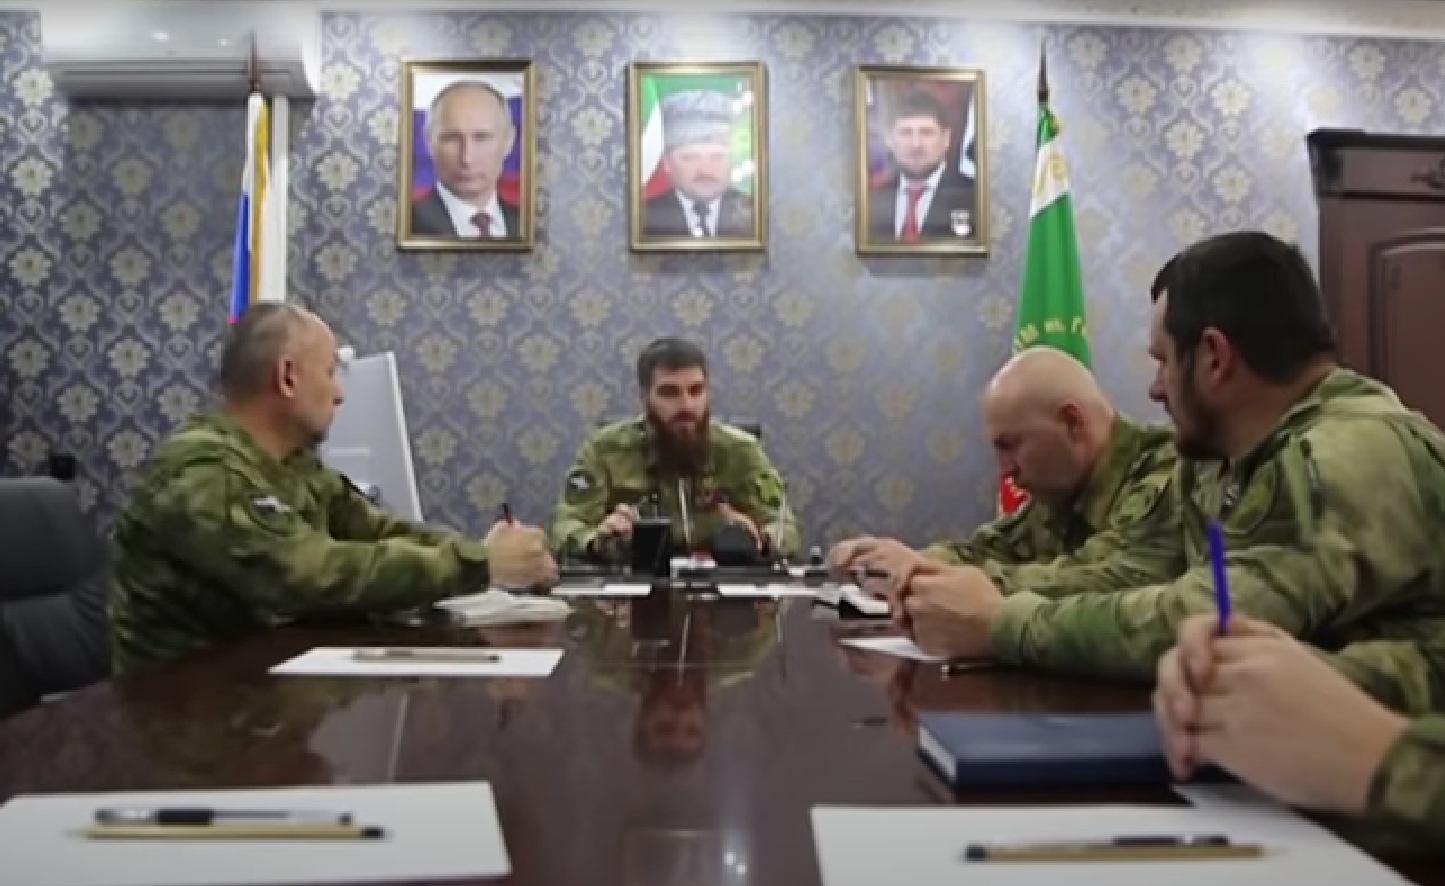 Магомед тушаев фото чеченский генерал